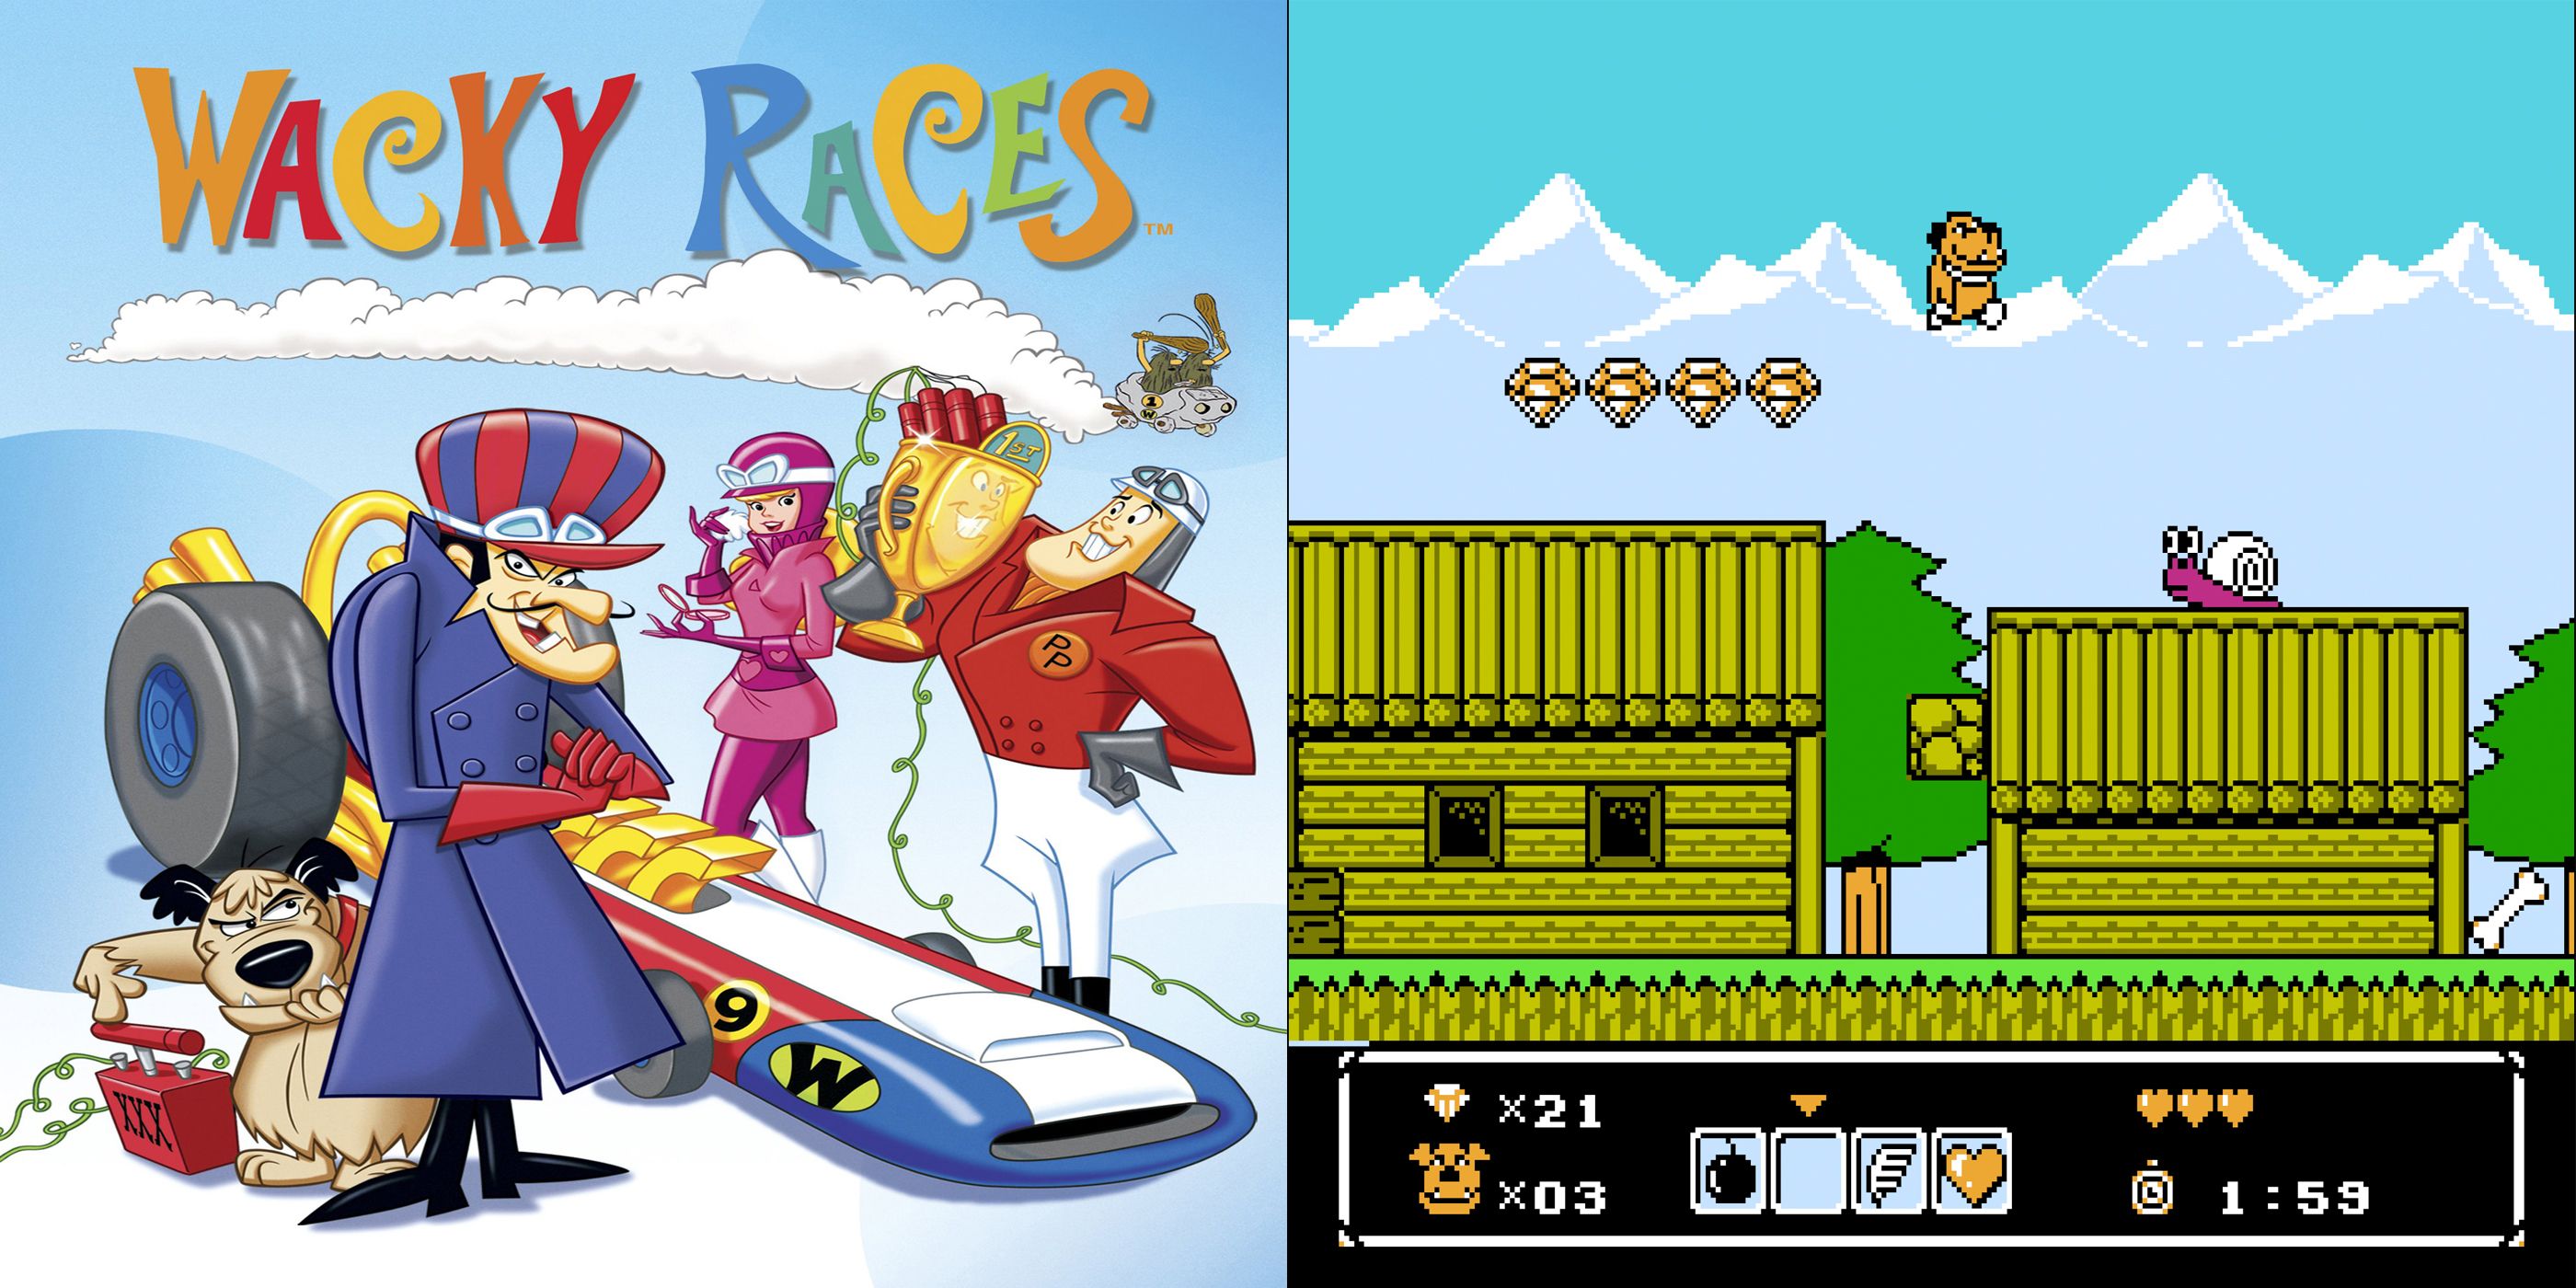 NES adaptation of Hanna-Barbera's Wacky Races